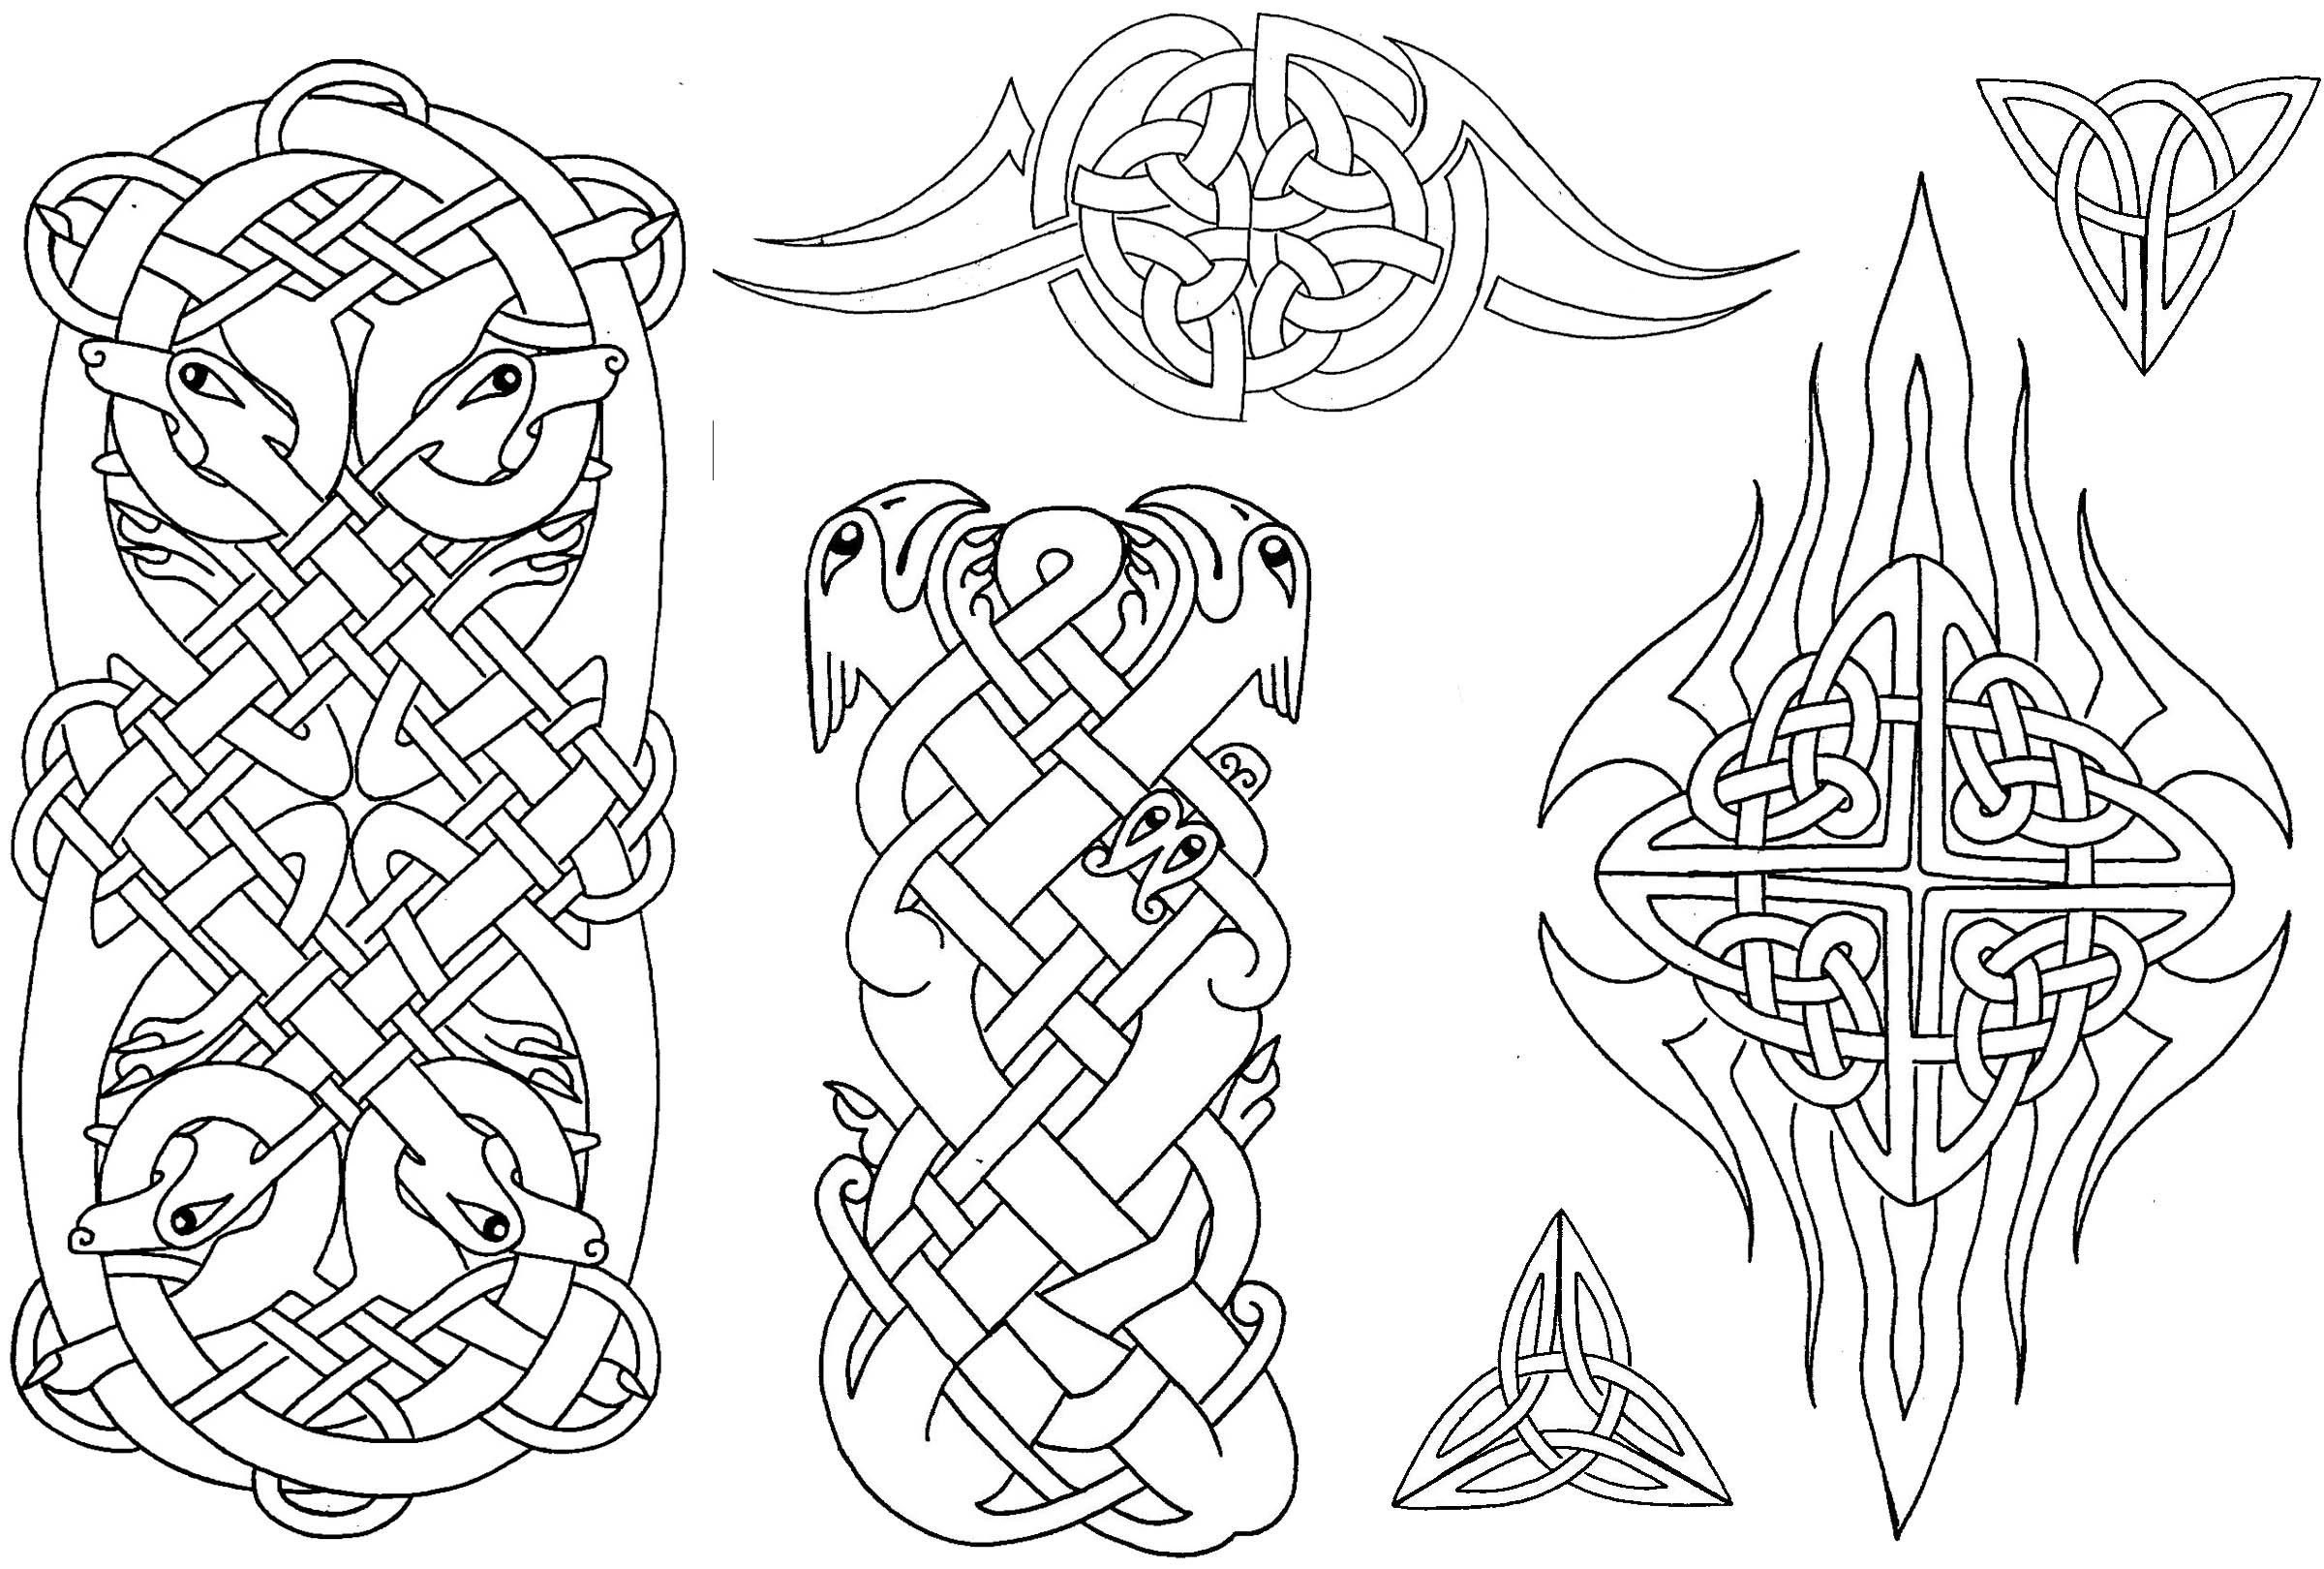 Кельтские тату - мифология, эскизы, узоры, где набить (на руку, плечо, как рукав)